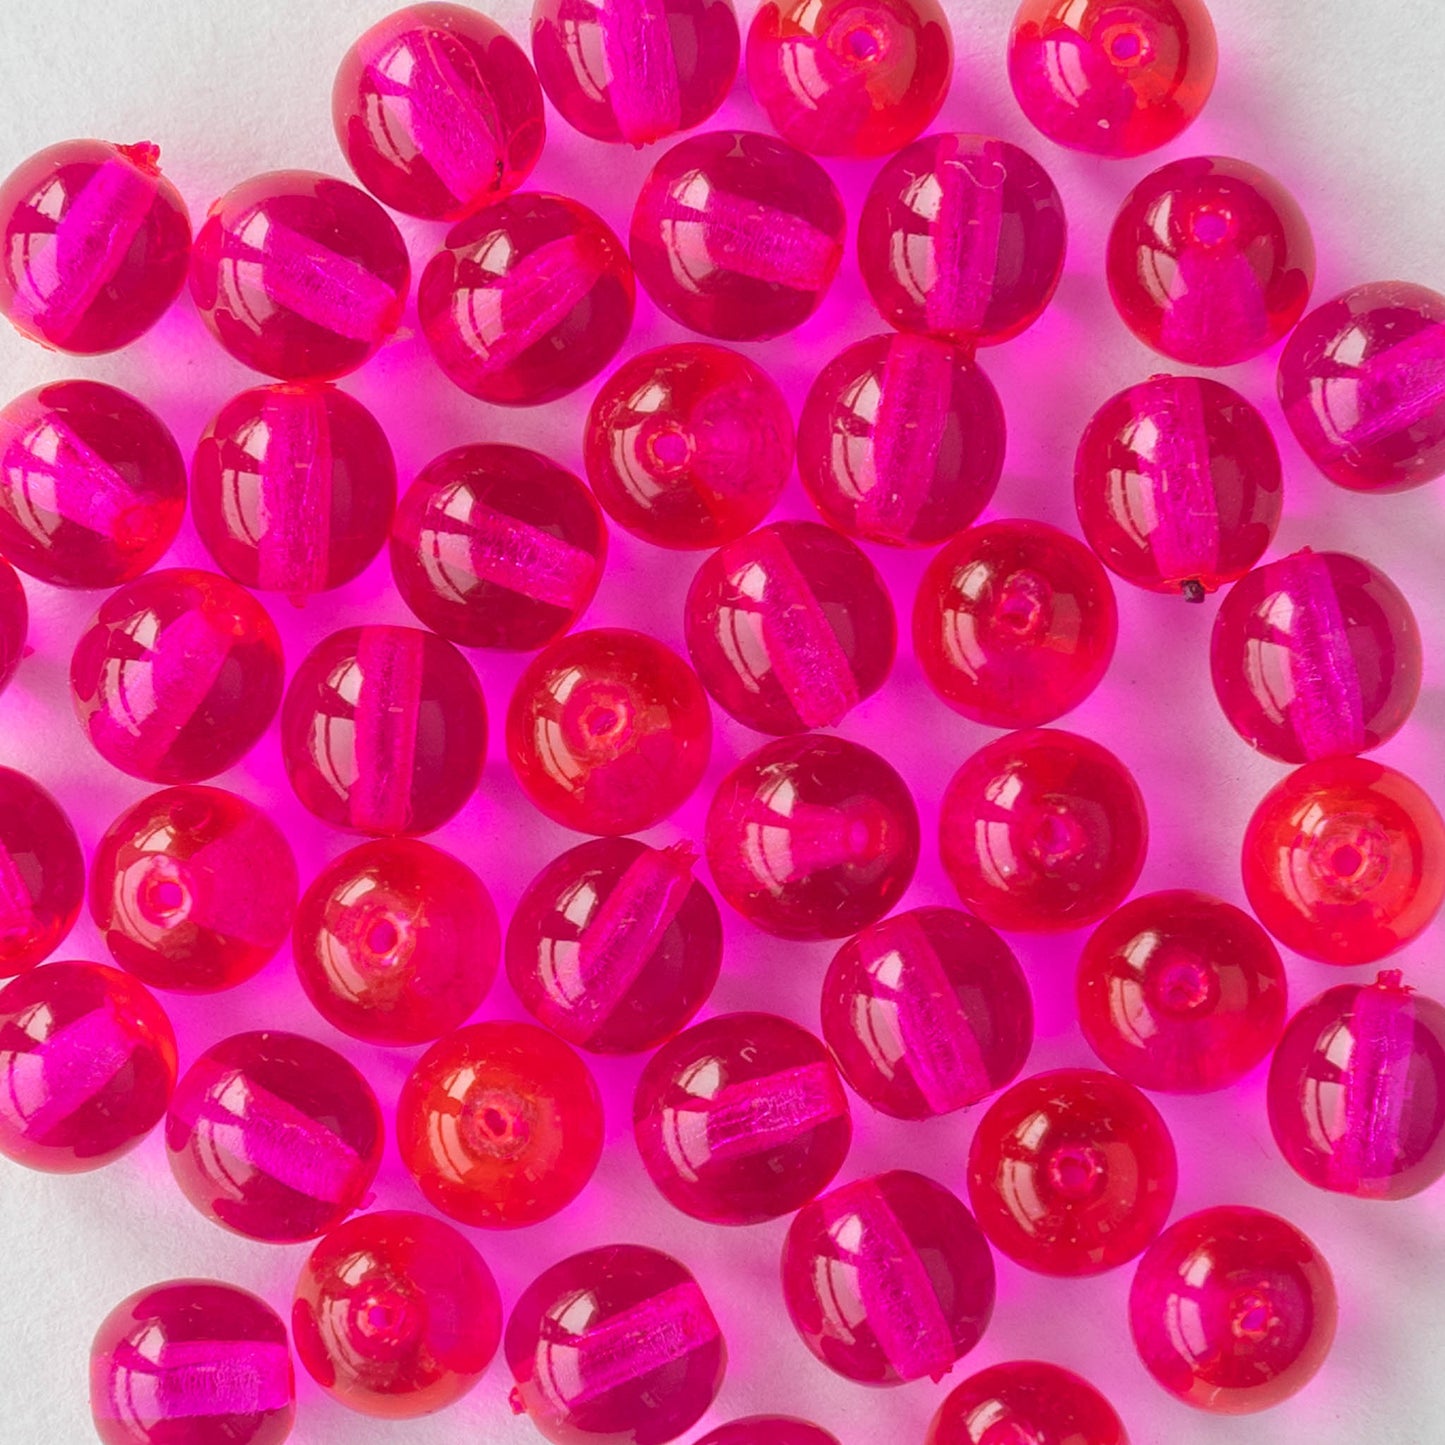 4mm Round Glass Beads - Transparent Pink Beads - Czech Glass Beads